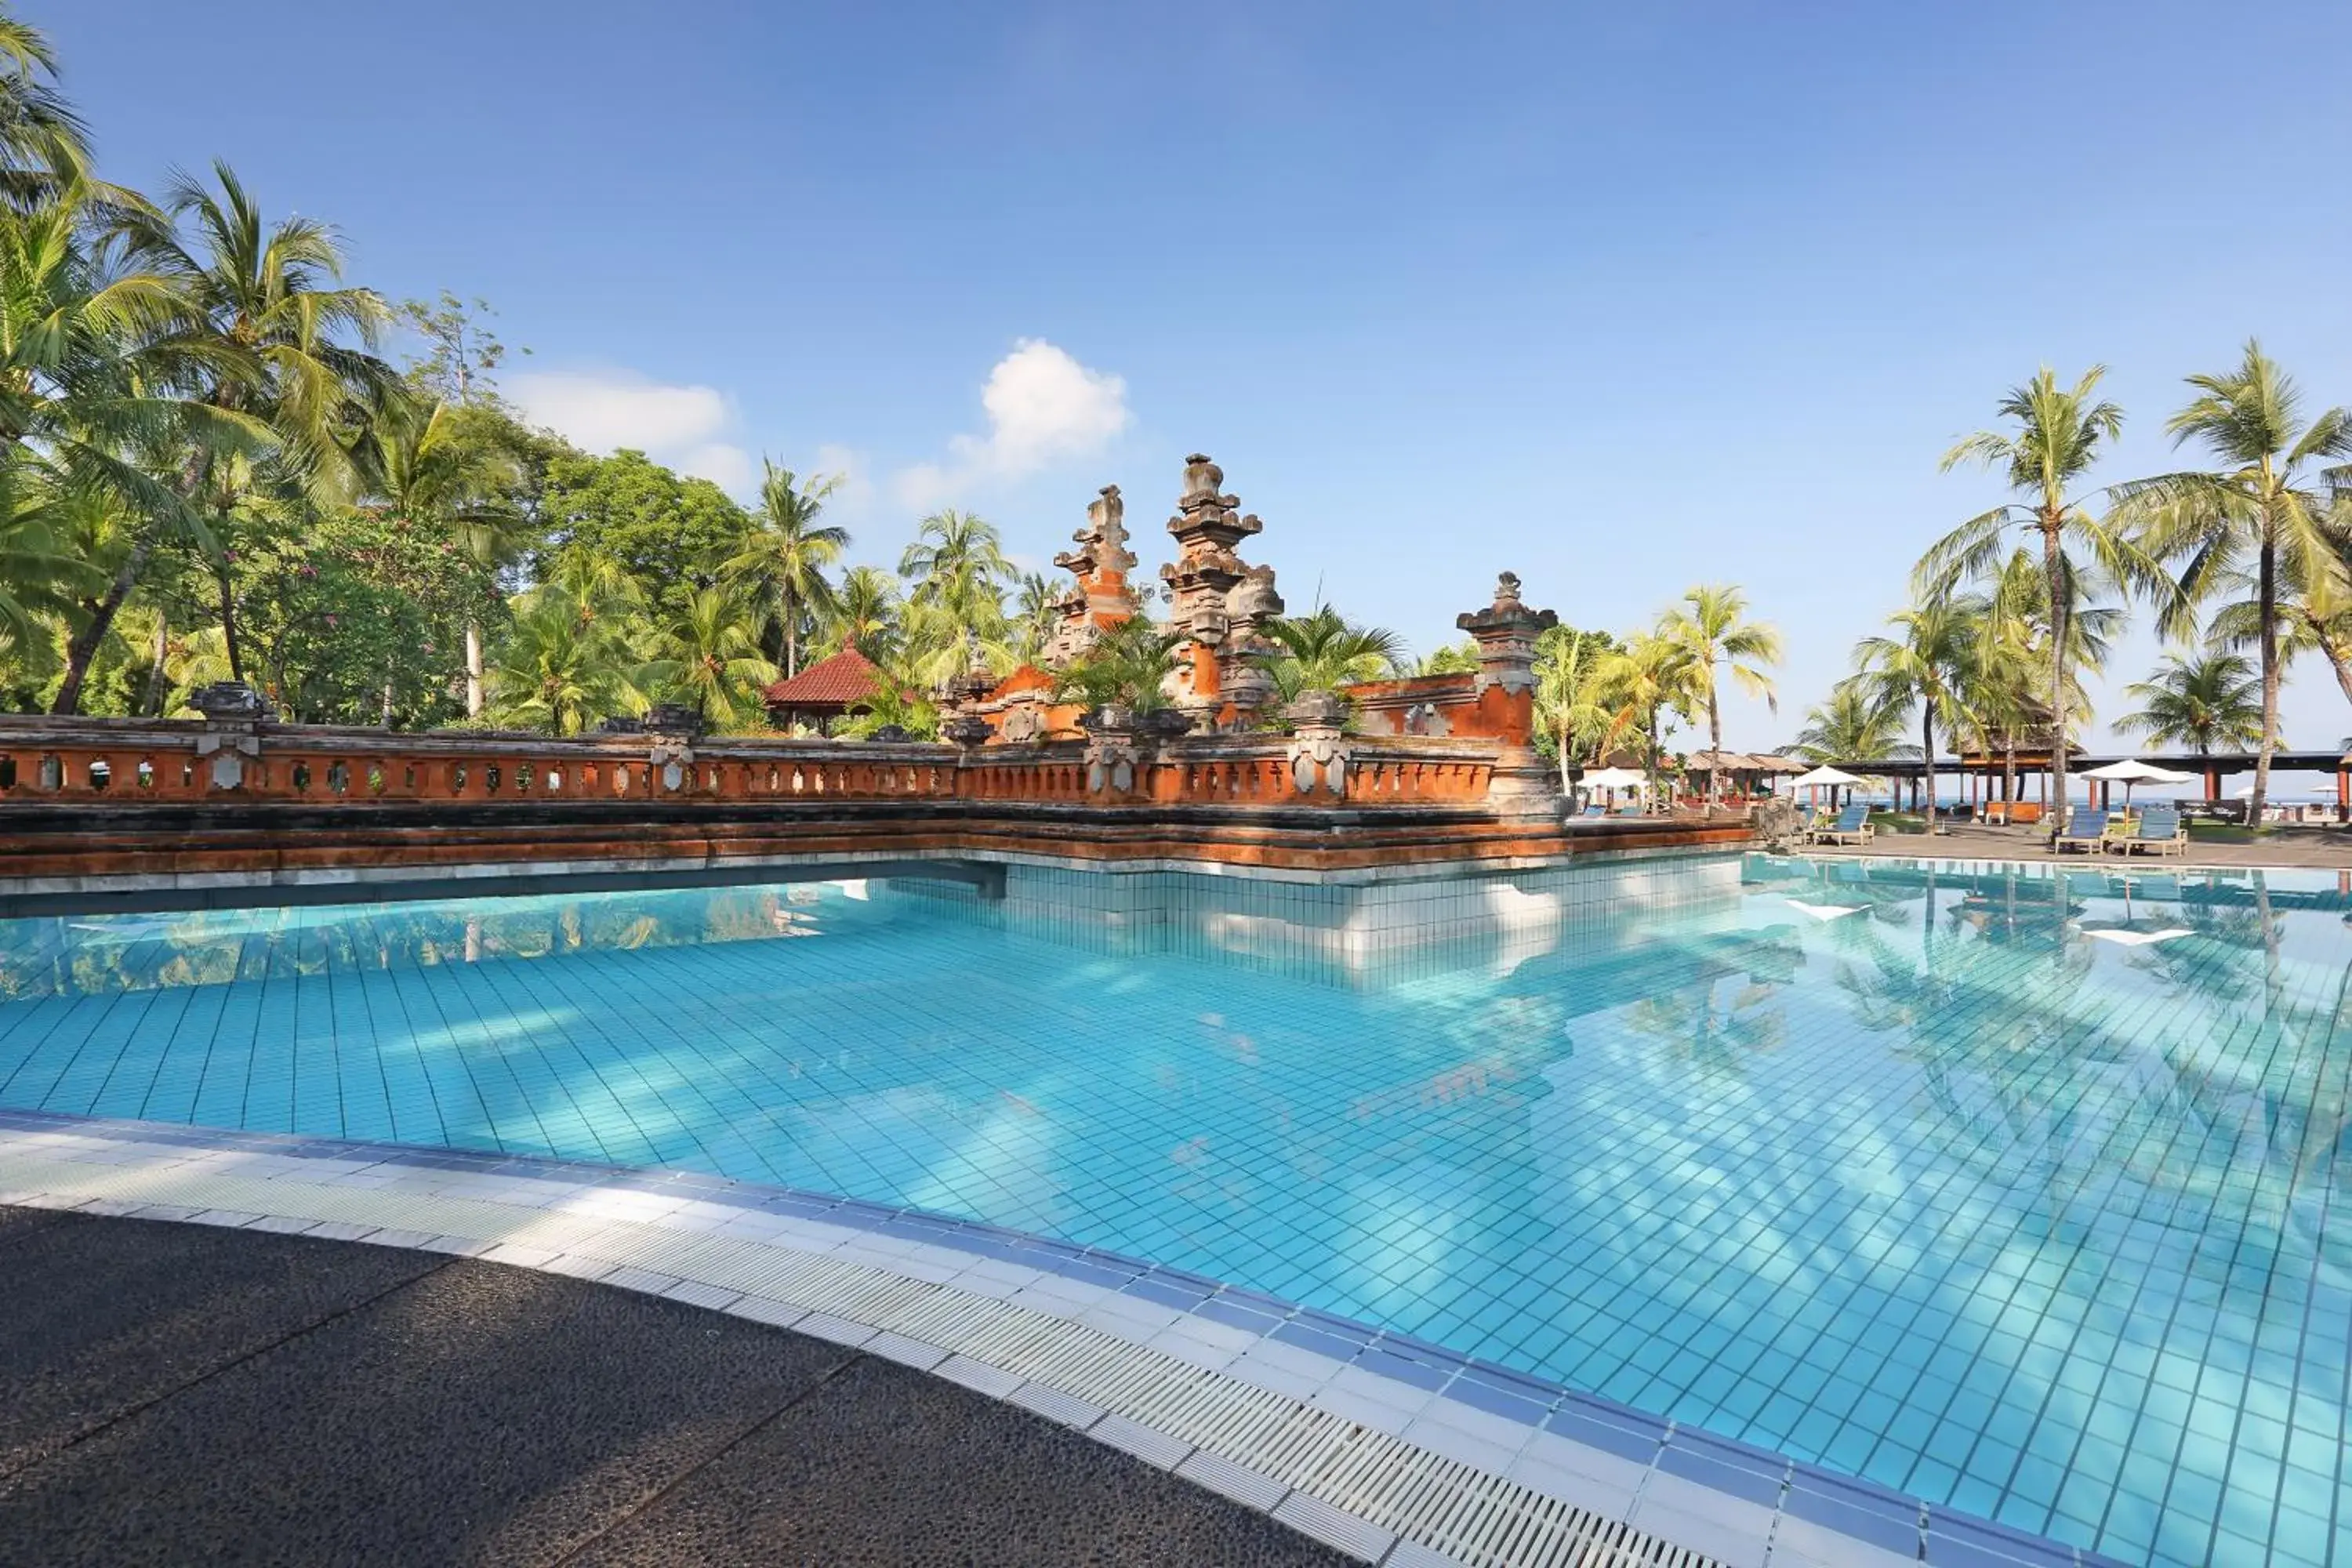 , Swimming Pool in Bintang Bali Resort